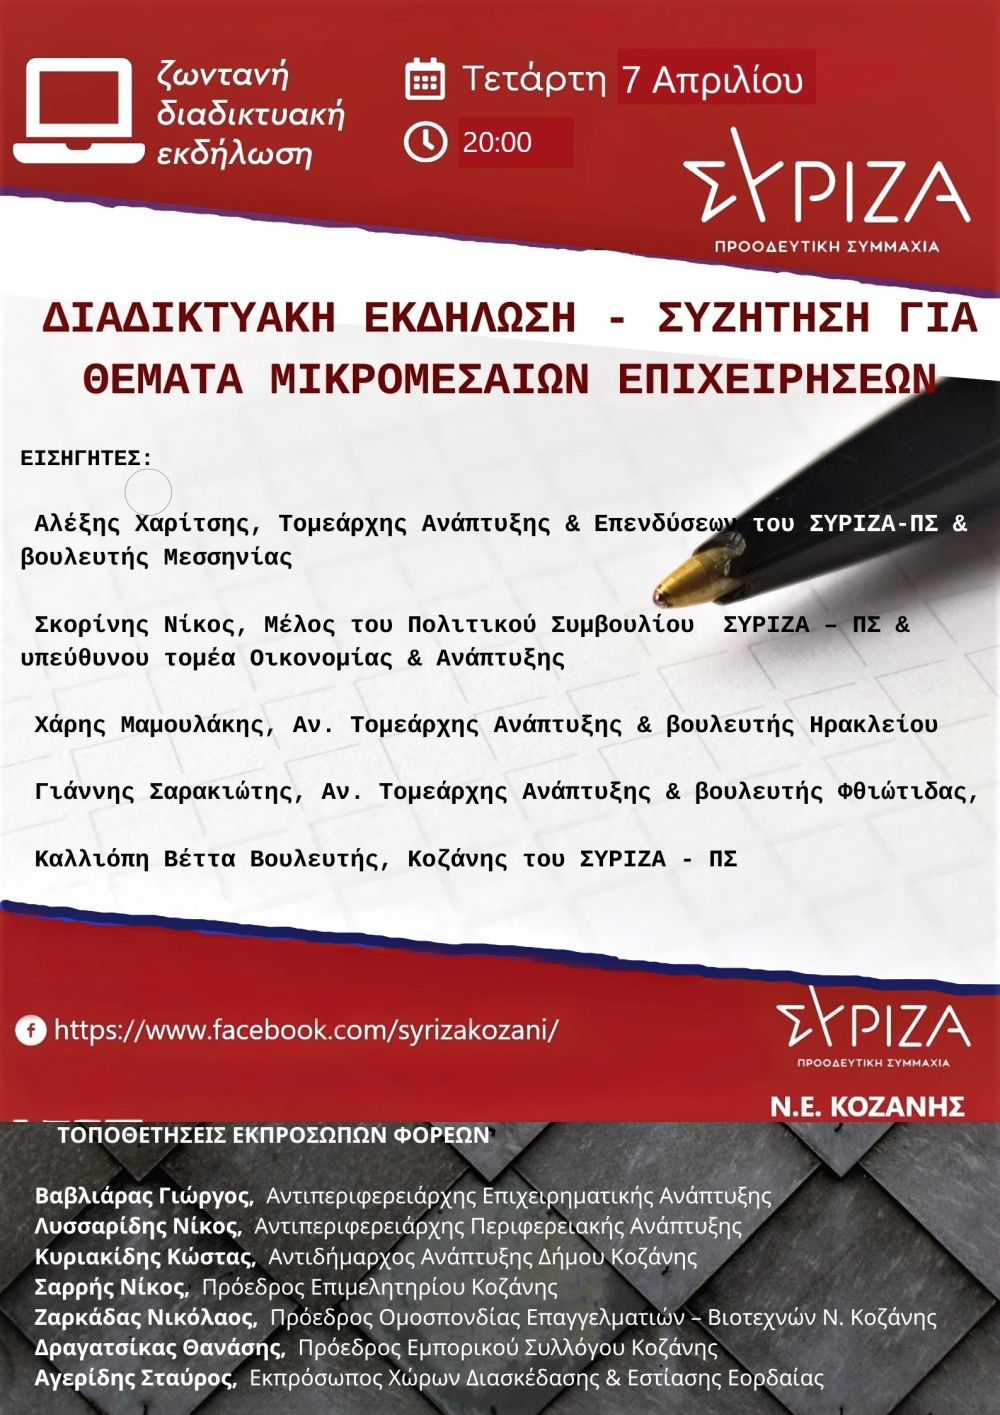 ΑΝΑΒΑΛΛΕΤΑΙ - Διαδικτυακή εκδήλωση της Ν.Ε. Κοζάνης του ΣΥΡΙΖΑ-Προοδευτική Συμμαχία για τα θέματα των μικρομεσαίων επιχειρήσεων